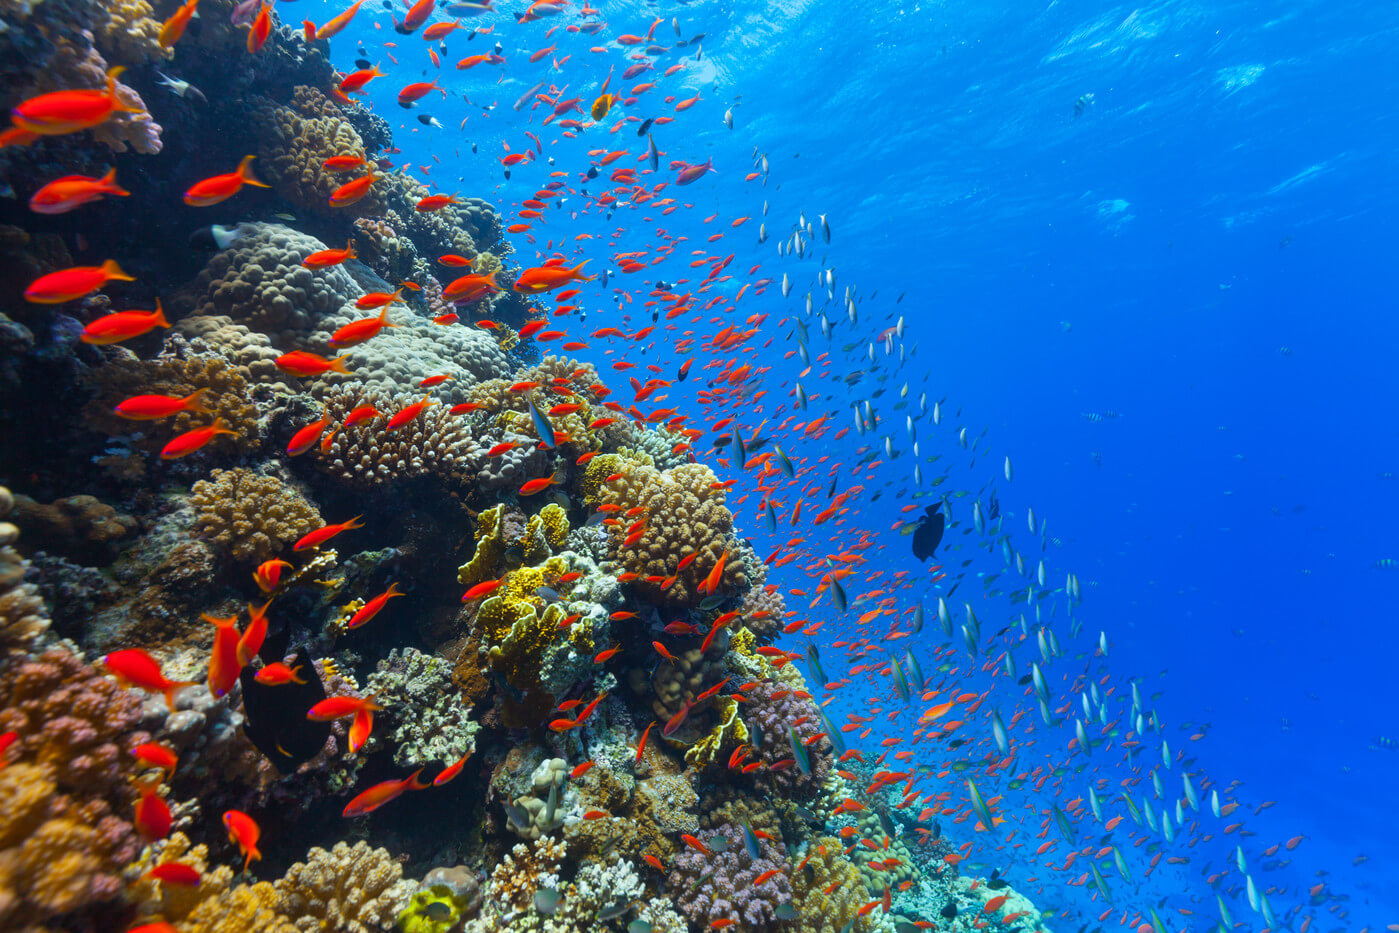 अम्लता के महासागरों में पानी धीरे-धीरे बढ़ रही है । कैसे करता है यह जानवरों को प्रभावित?